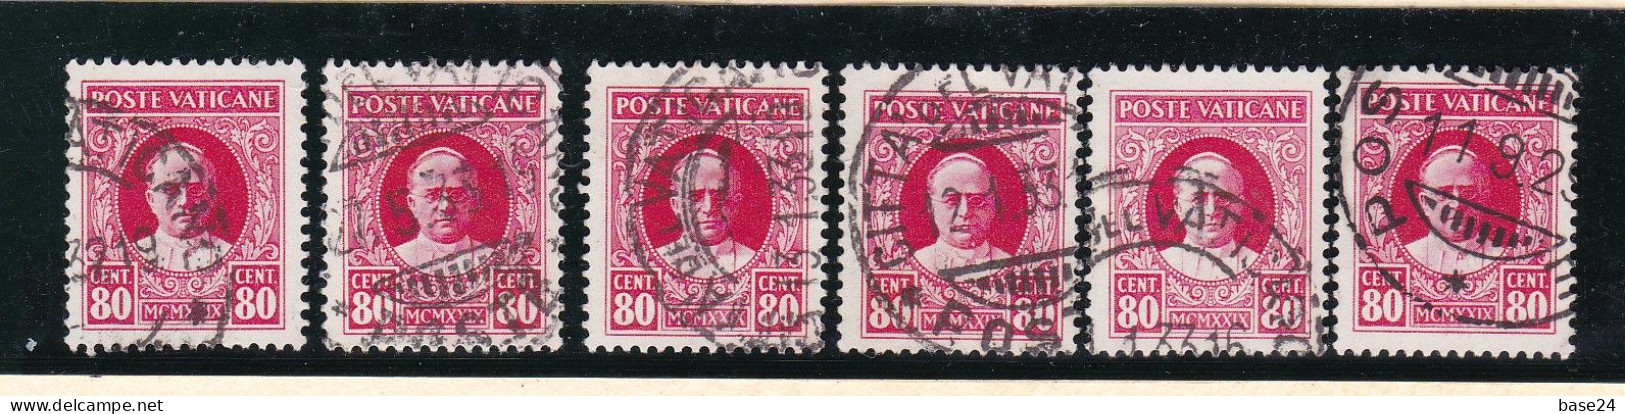 1929 Vaticano Vatican SEGNATASSE  POSTAGE DUE 80 Cent (x 6) Usati USED - Impuestos